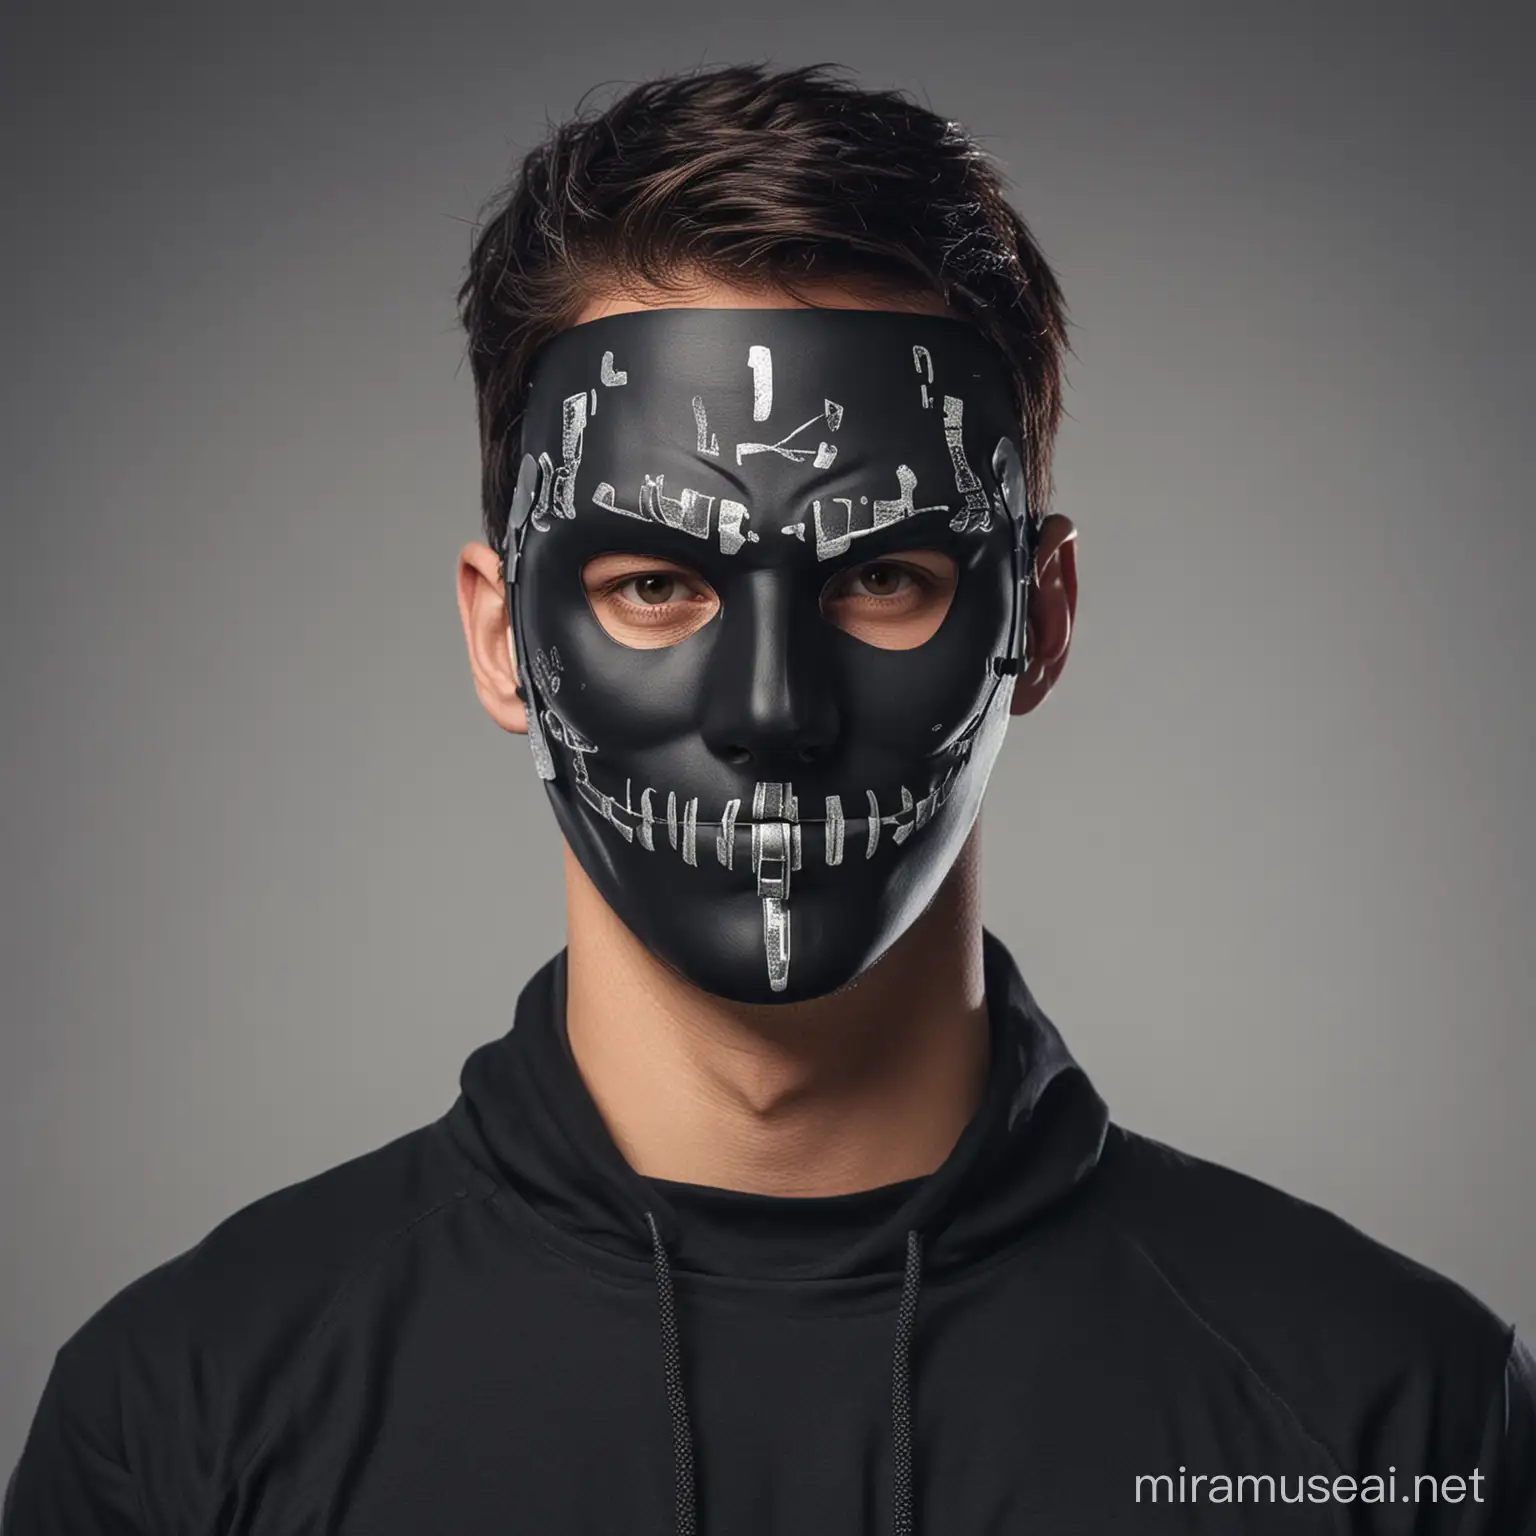 Anonymous Hacker Wearing Cyber Mask